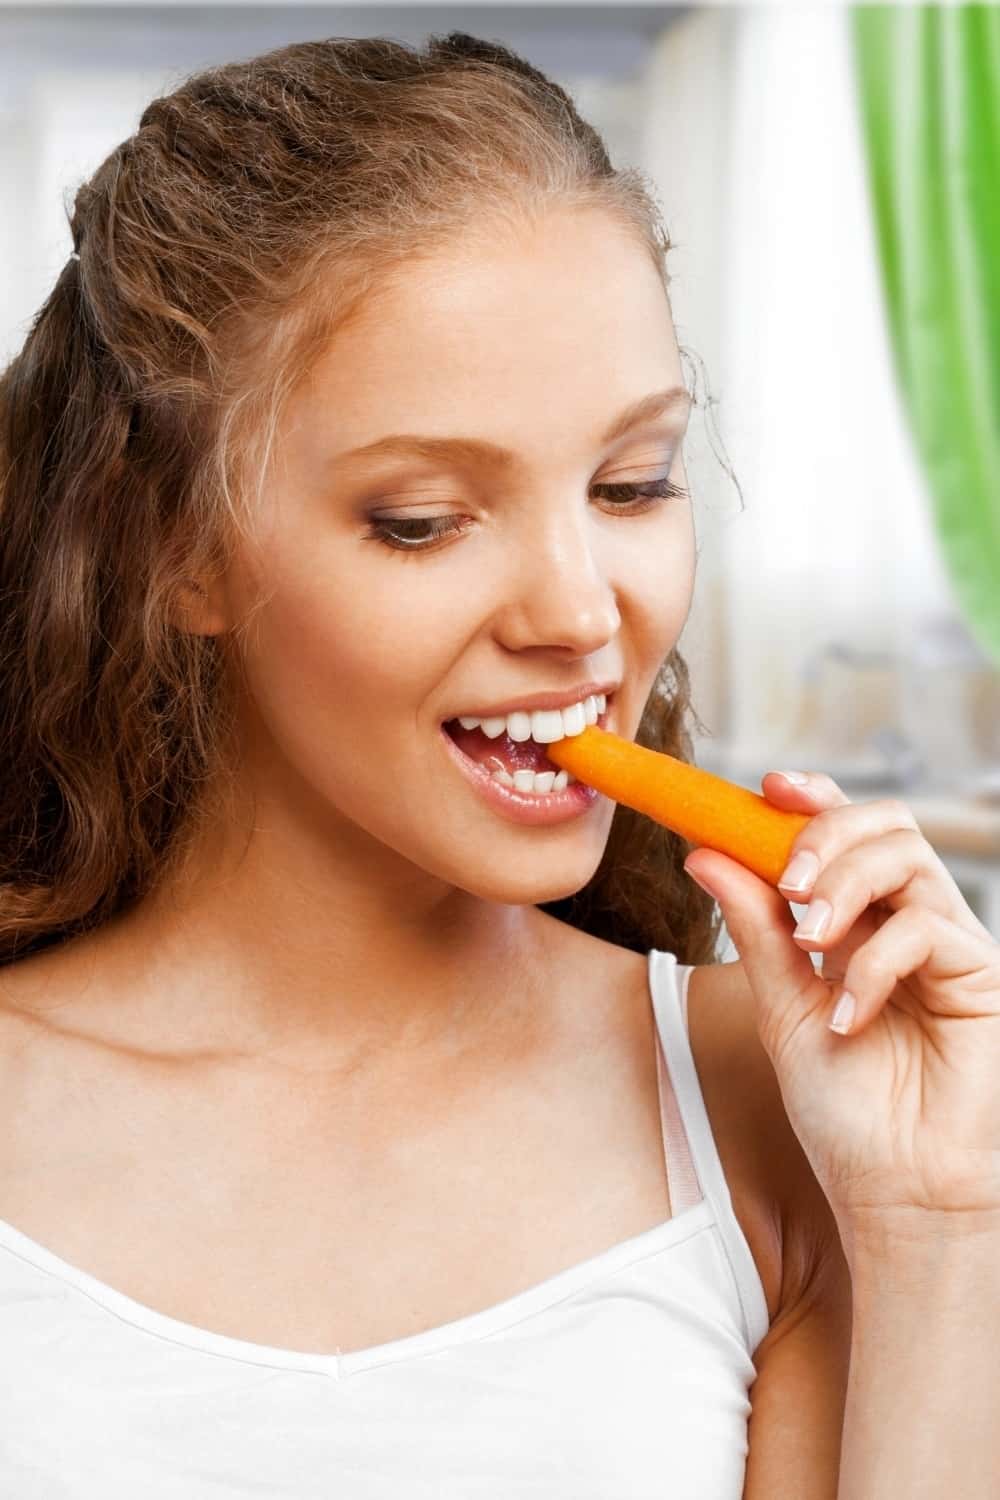 die Frau isst eine frische Karotte